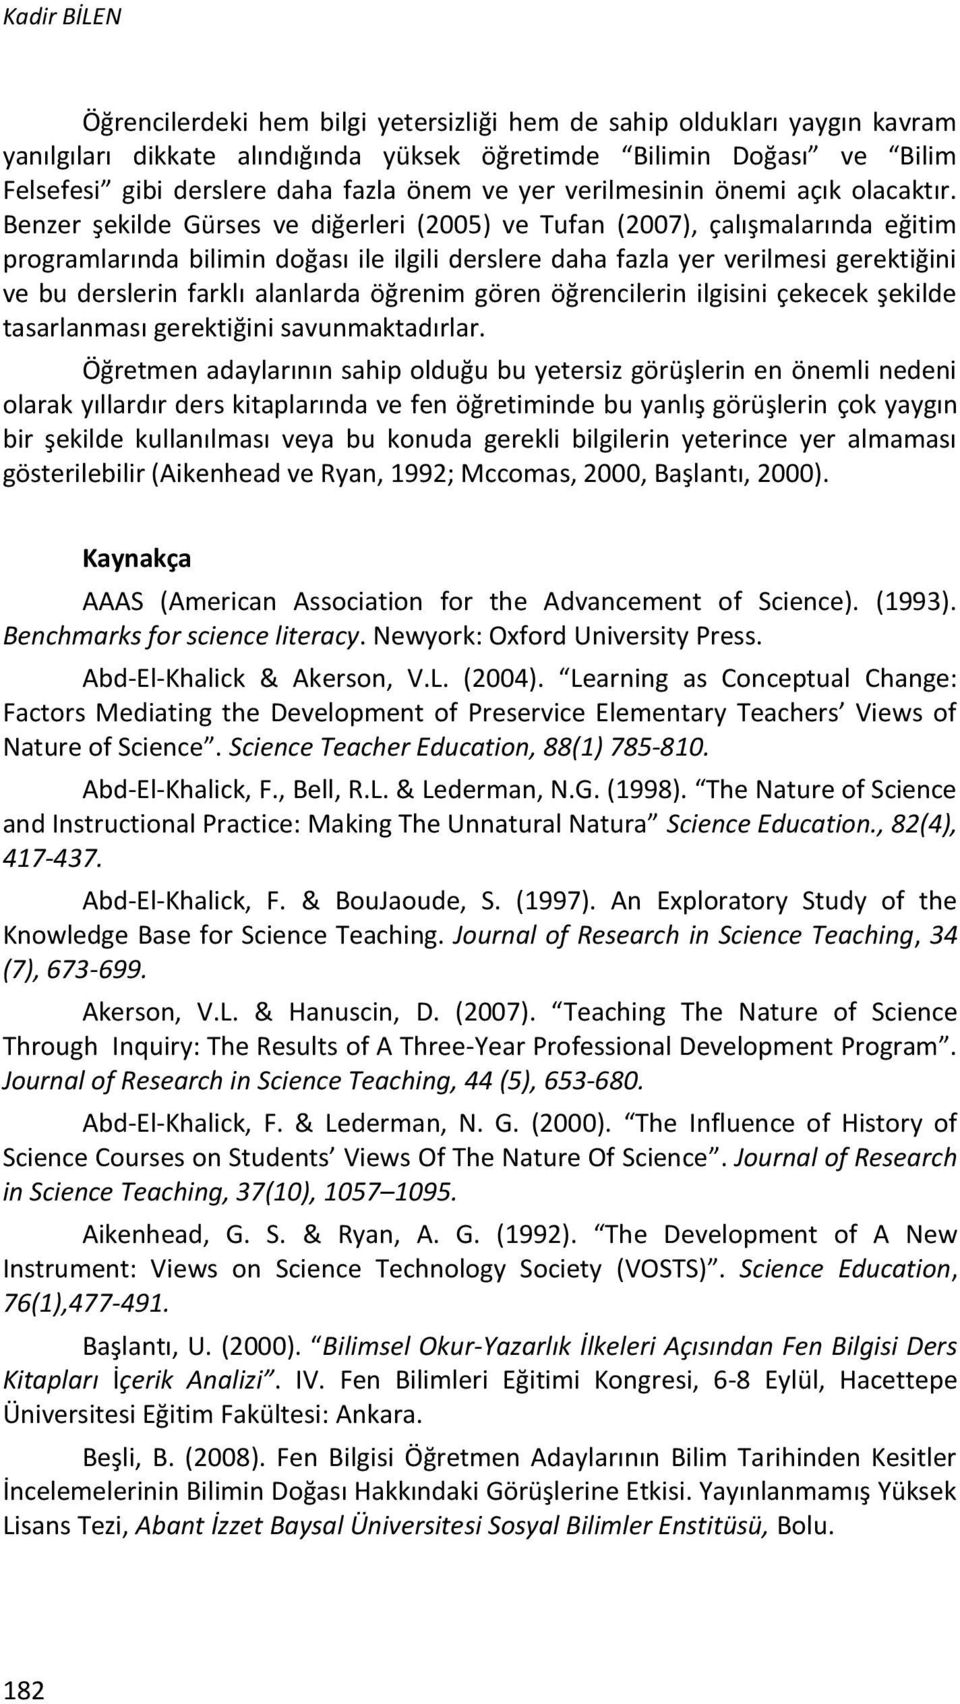 Benzer şekilde Gürses ve diğerleri (2005) ve Tufan (2007), çalışmalarında eğitim programlarında bilimin doğası ile ilgili derslere daha fazla yer verilmesi gerektiğini ve bu derslerin farklı